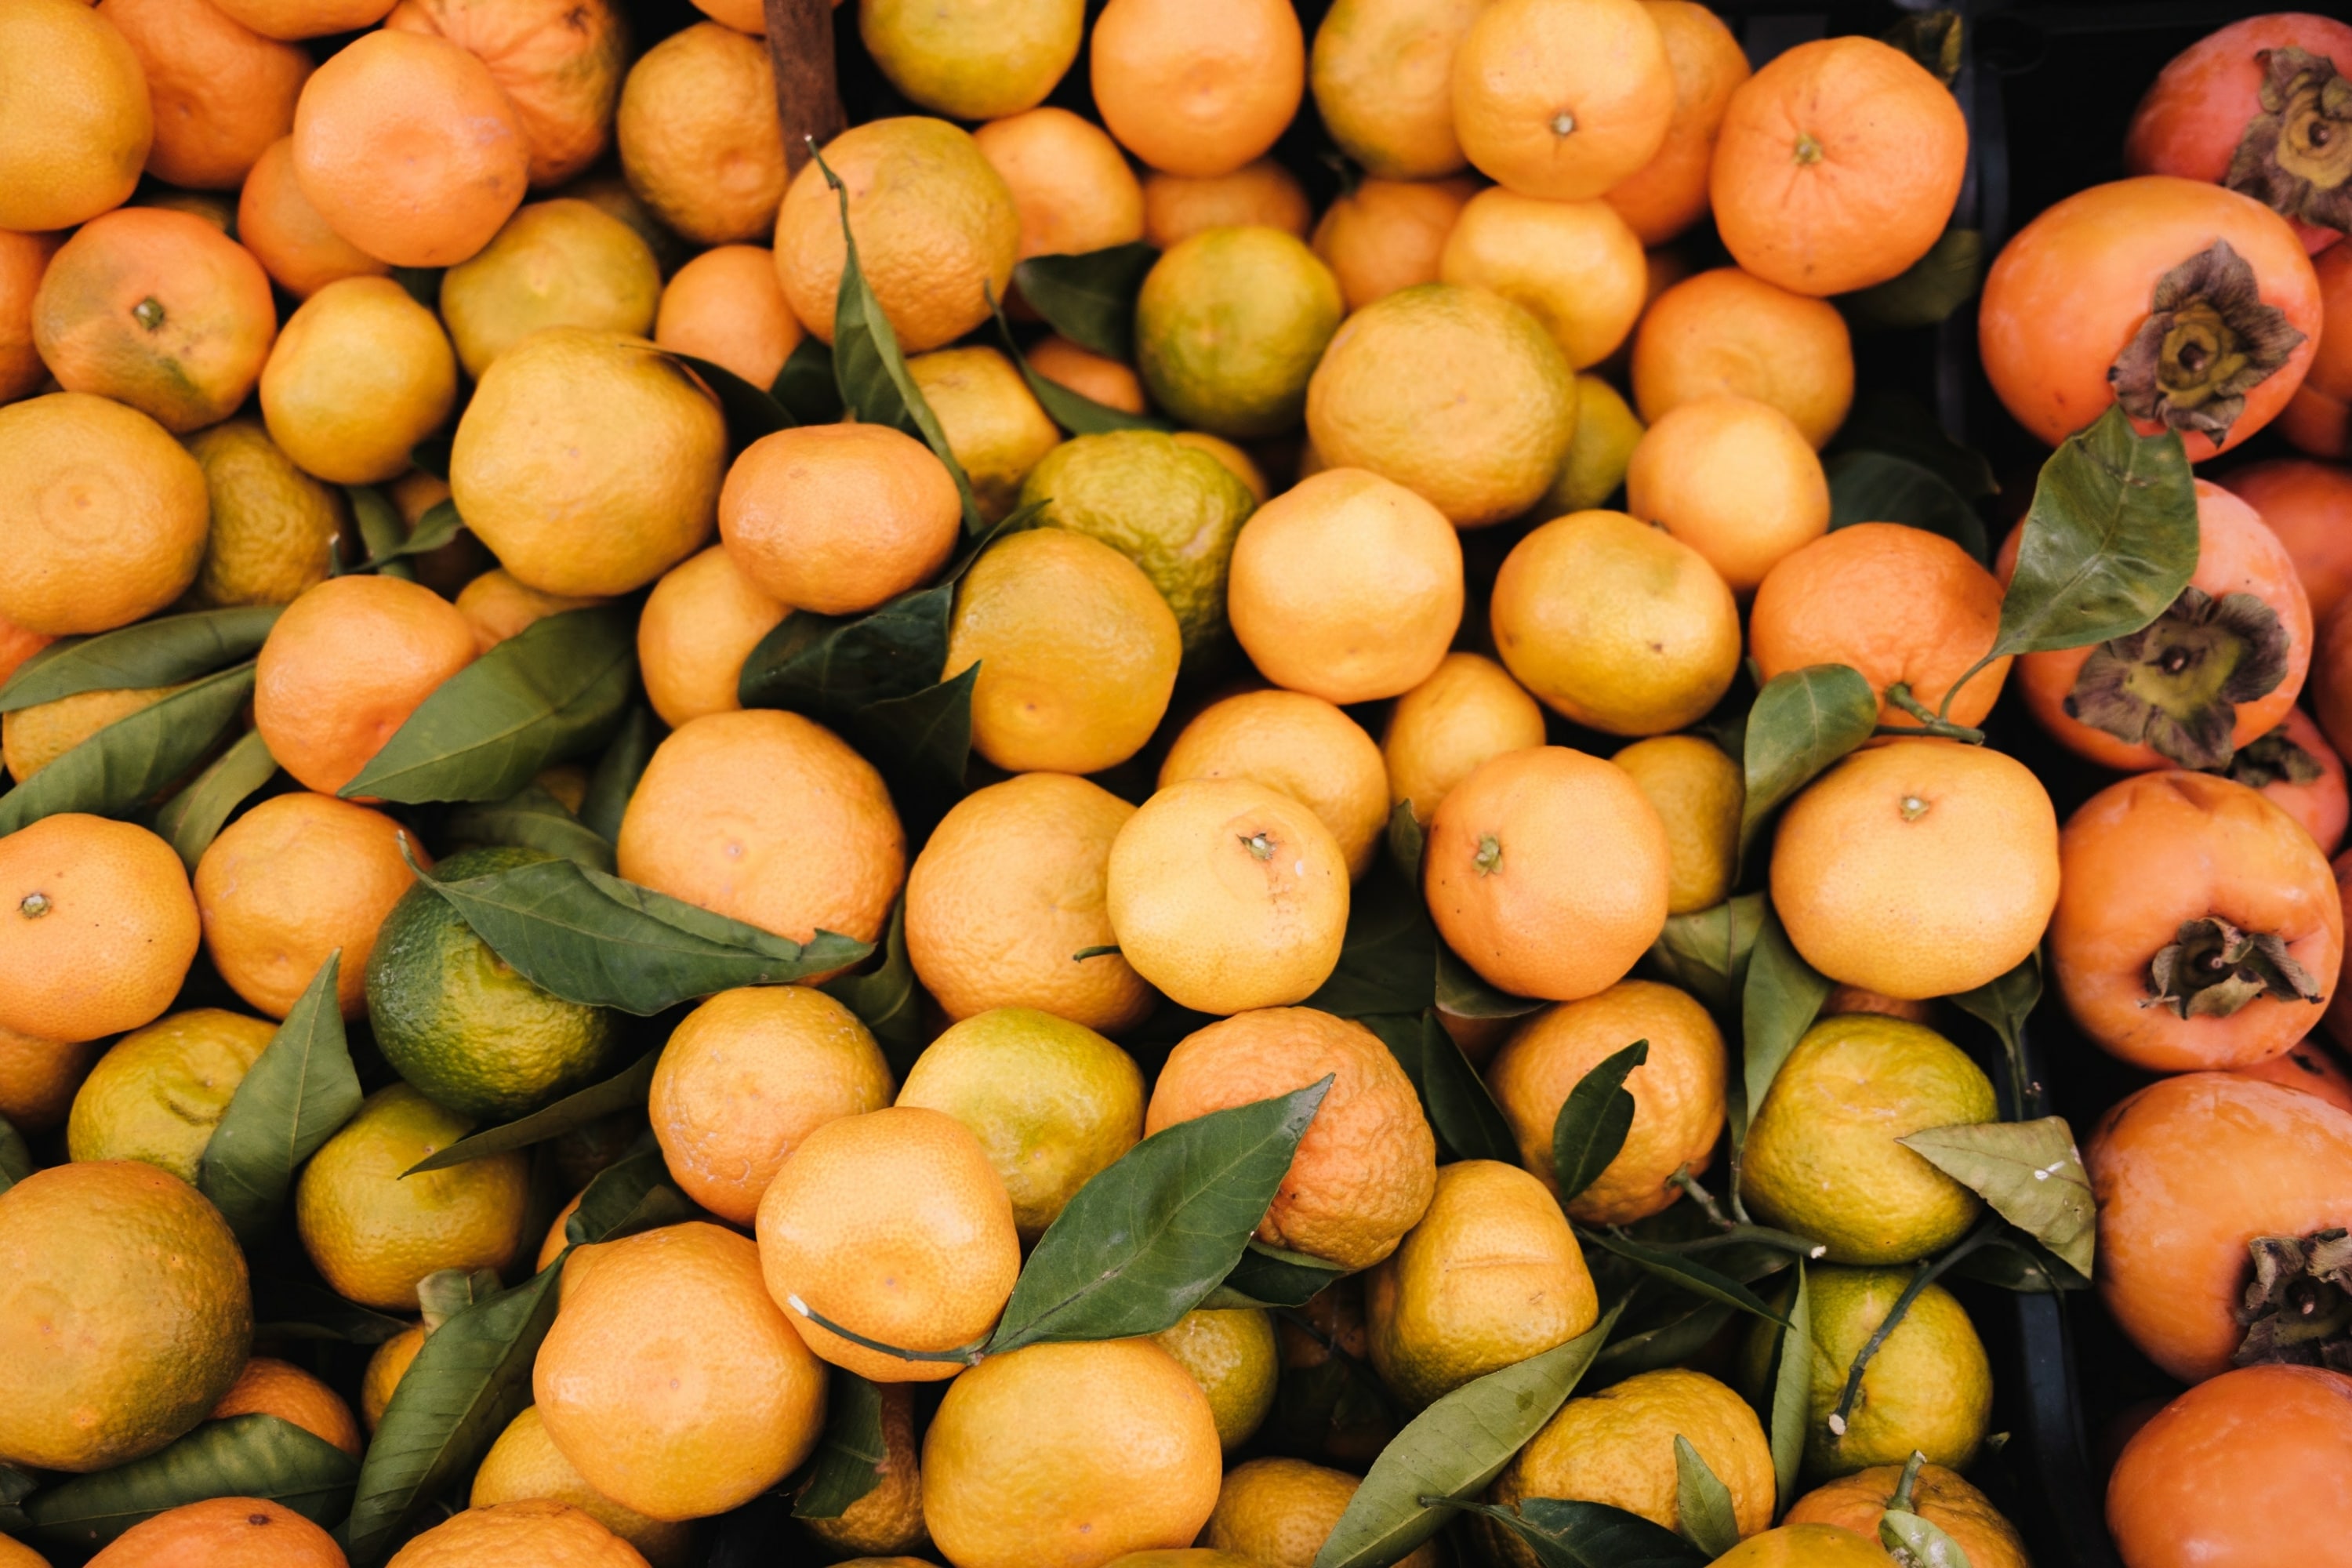 pile of oranges